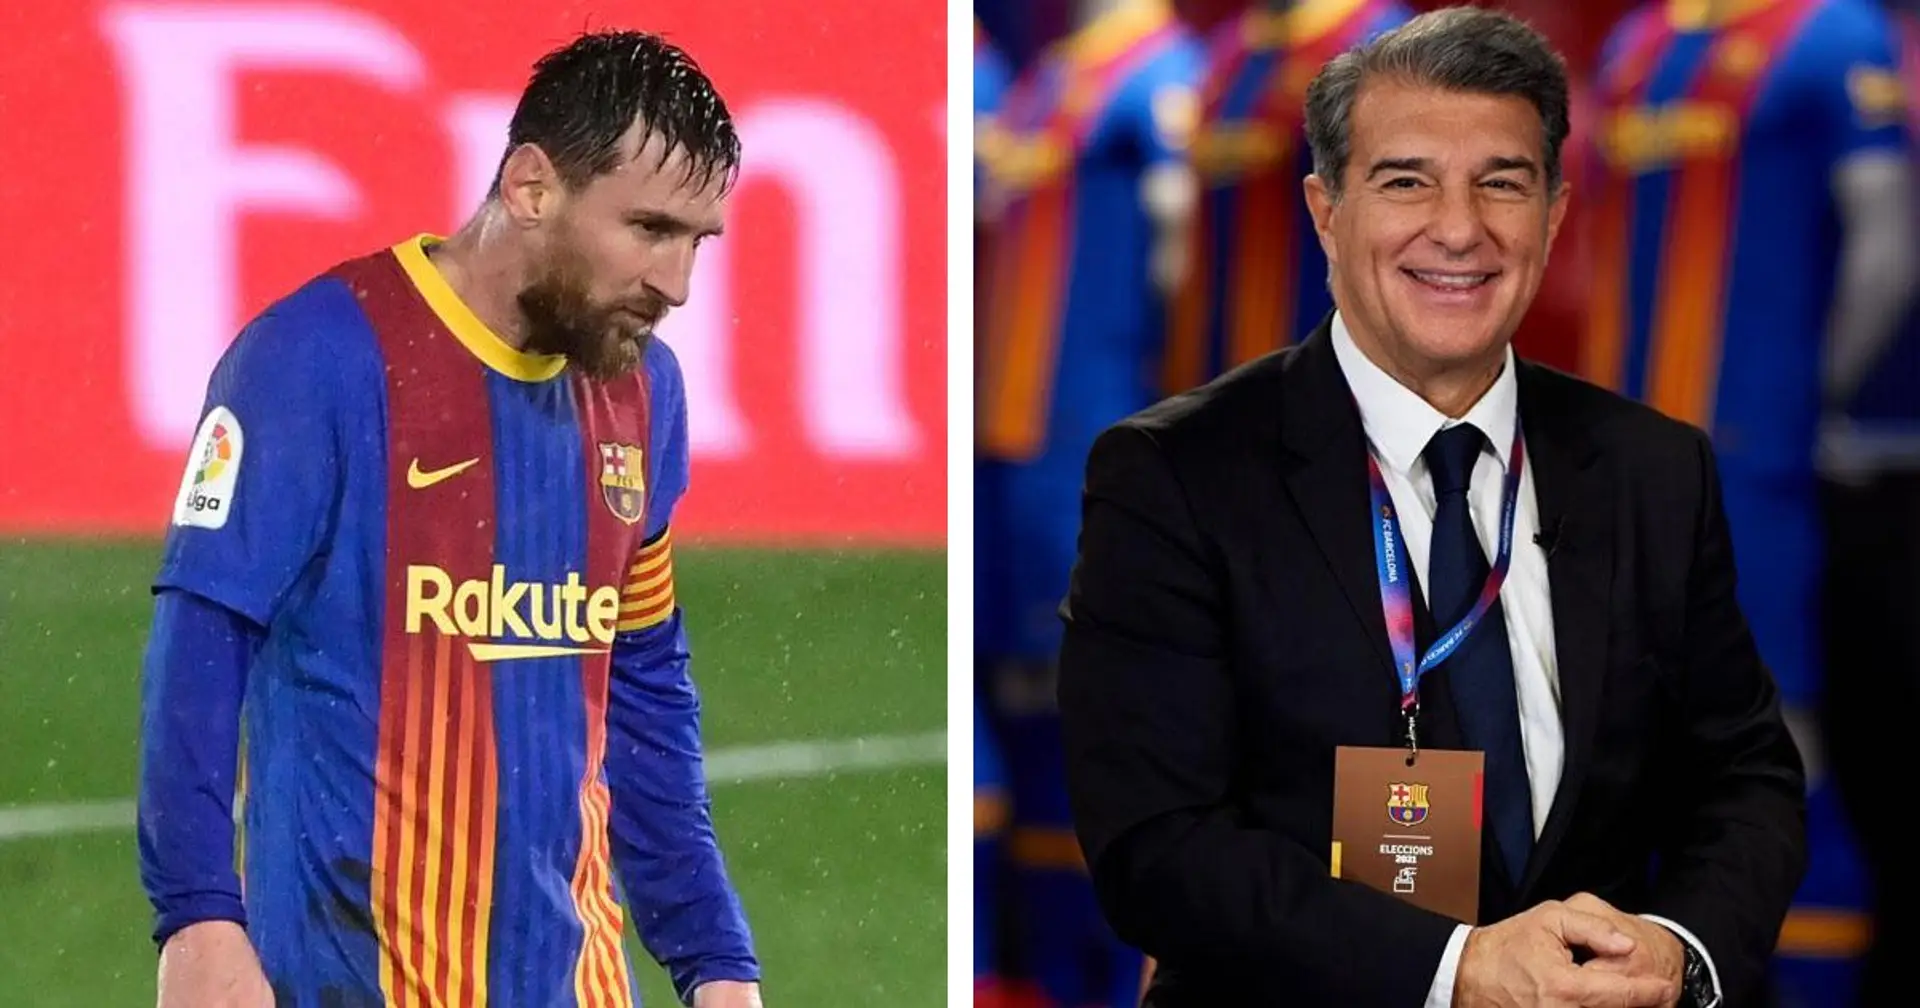 El Barça cae al tercer puesto & 3 importantes noticias más que tal vez te hayas perdido